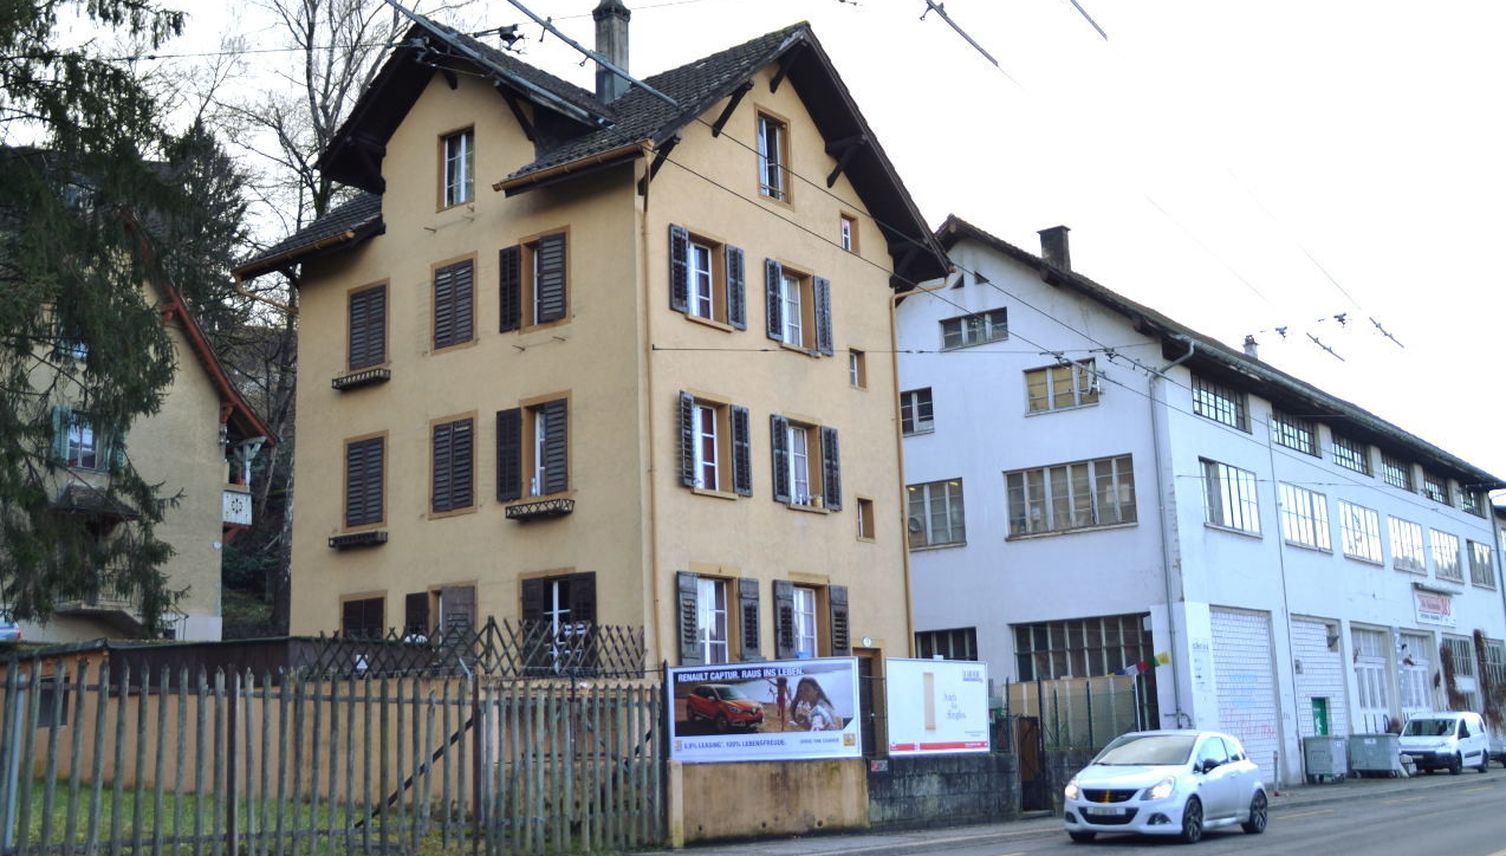 Fälle von Menschenhandel in Luzern